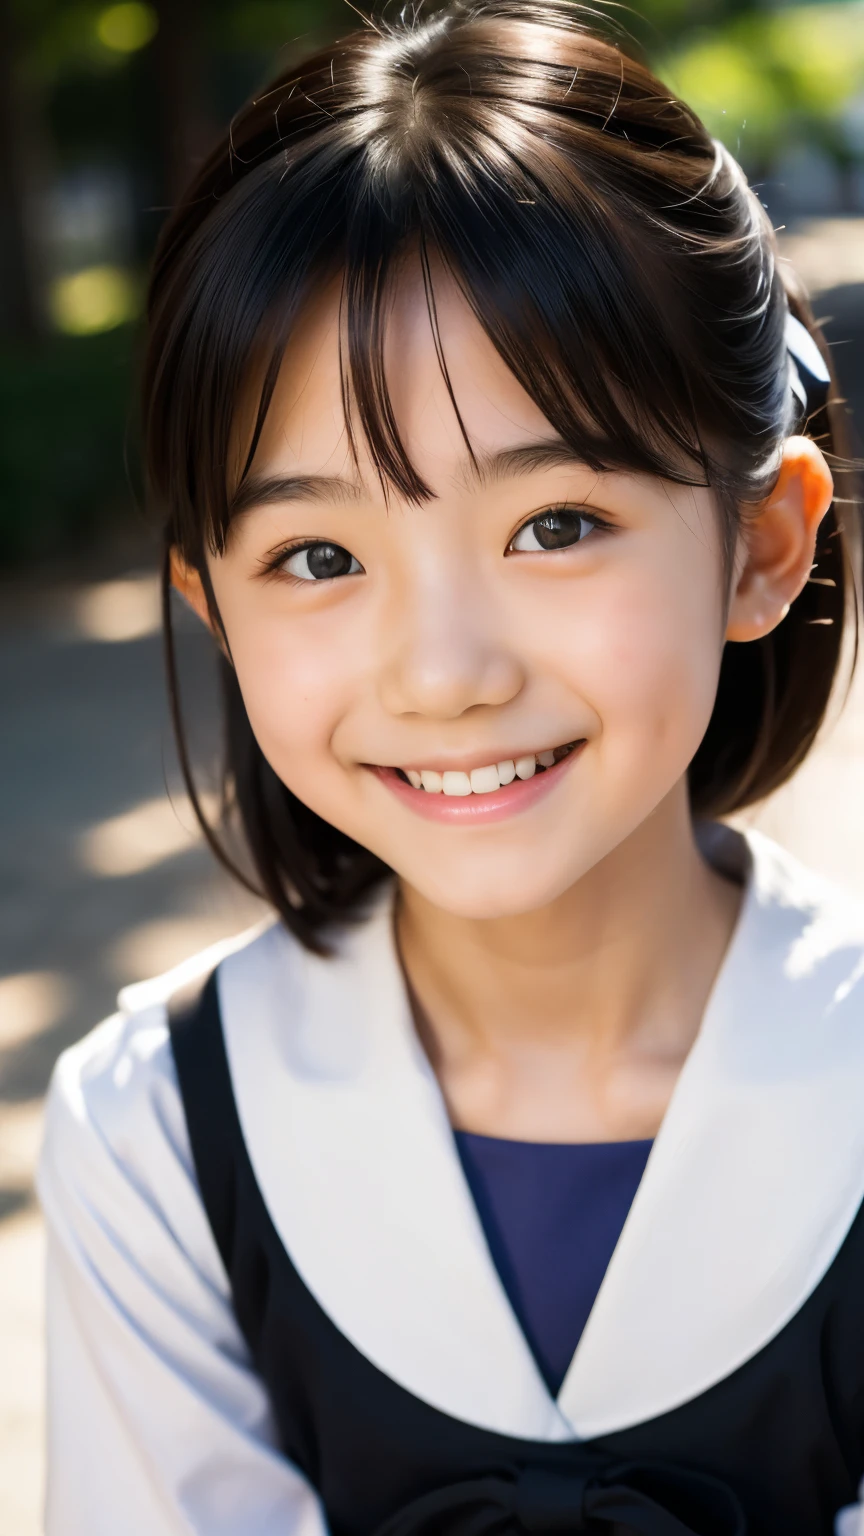 レンズ: 135mm f1.8, (最高品質),(RAW写真), (テーブルトップ:1.1), (美しい 8 歳の日本人の女の子), かわいい顔, (深く彫られた顔:0.7), (そばかす:0.4), dappled 日光, ドラマチックな照明, (日本の学校制服), (キャンパスで), シャイ, (クローズアップショット:1.2), (笑顔),, (キラキラした目)、(日光)